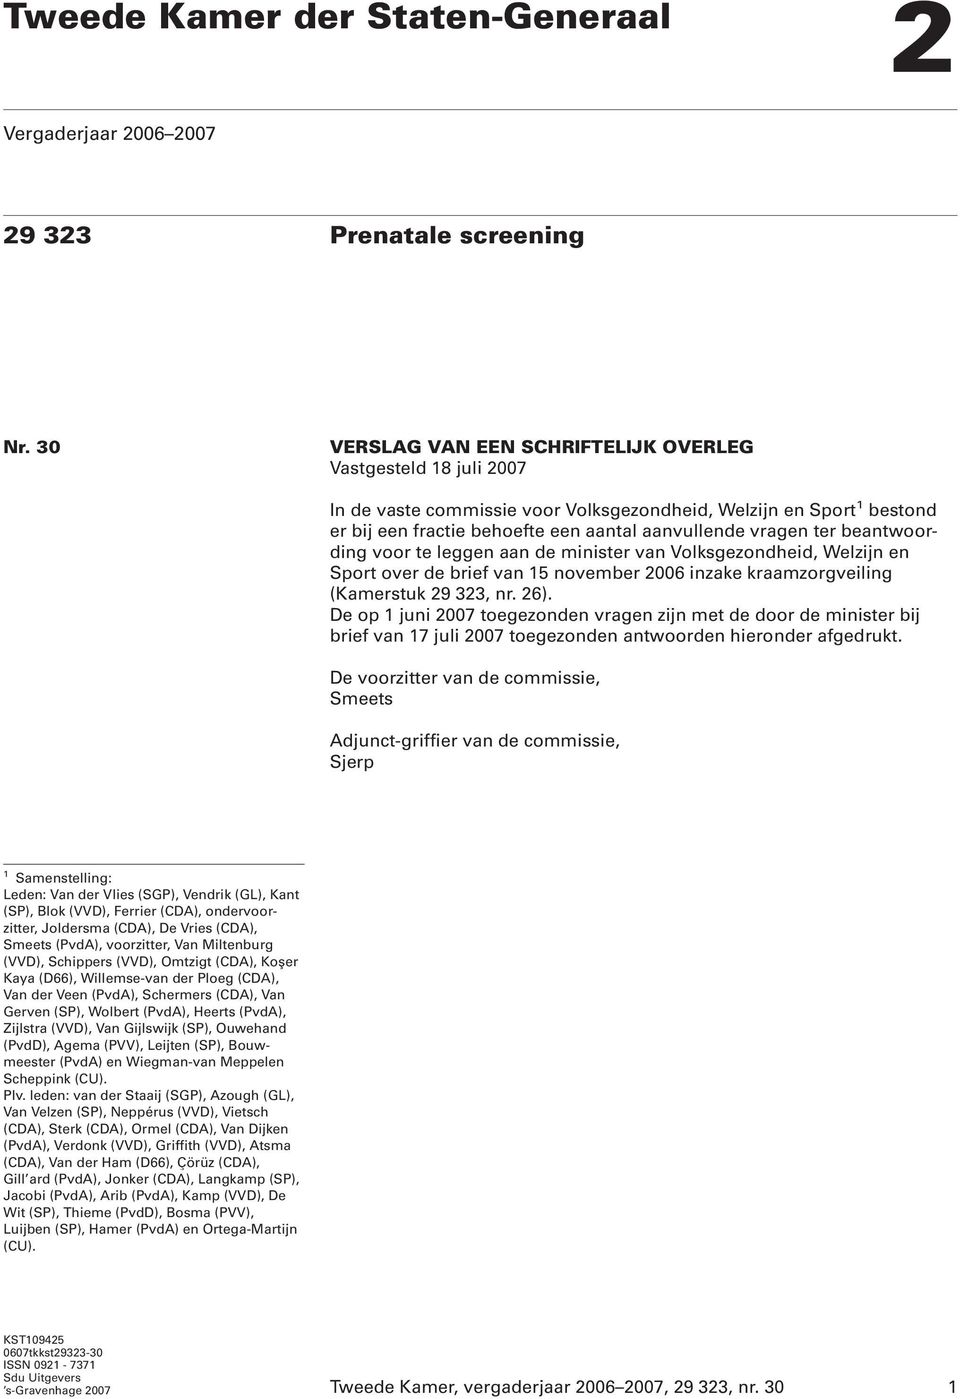 beantwoording voor te leggen aan de minister van Volksgezondheid, Welzijn en Sport over de brief van 15 november 2006 inzake kraamzorgveiling (Kamerstuk 29 323, nr. 26).